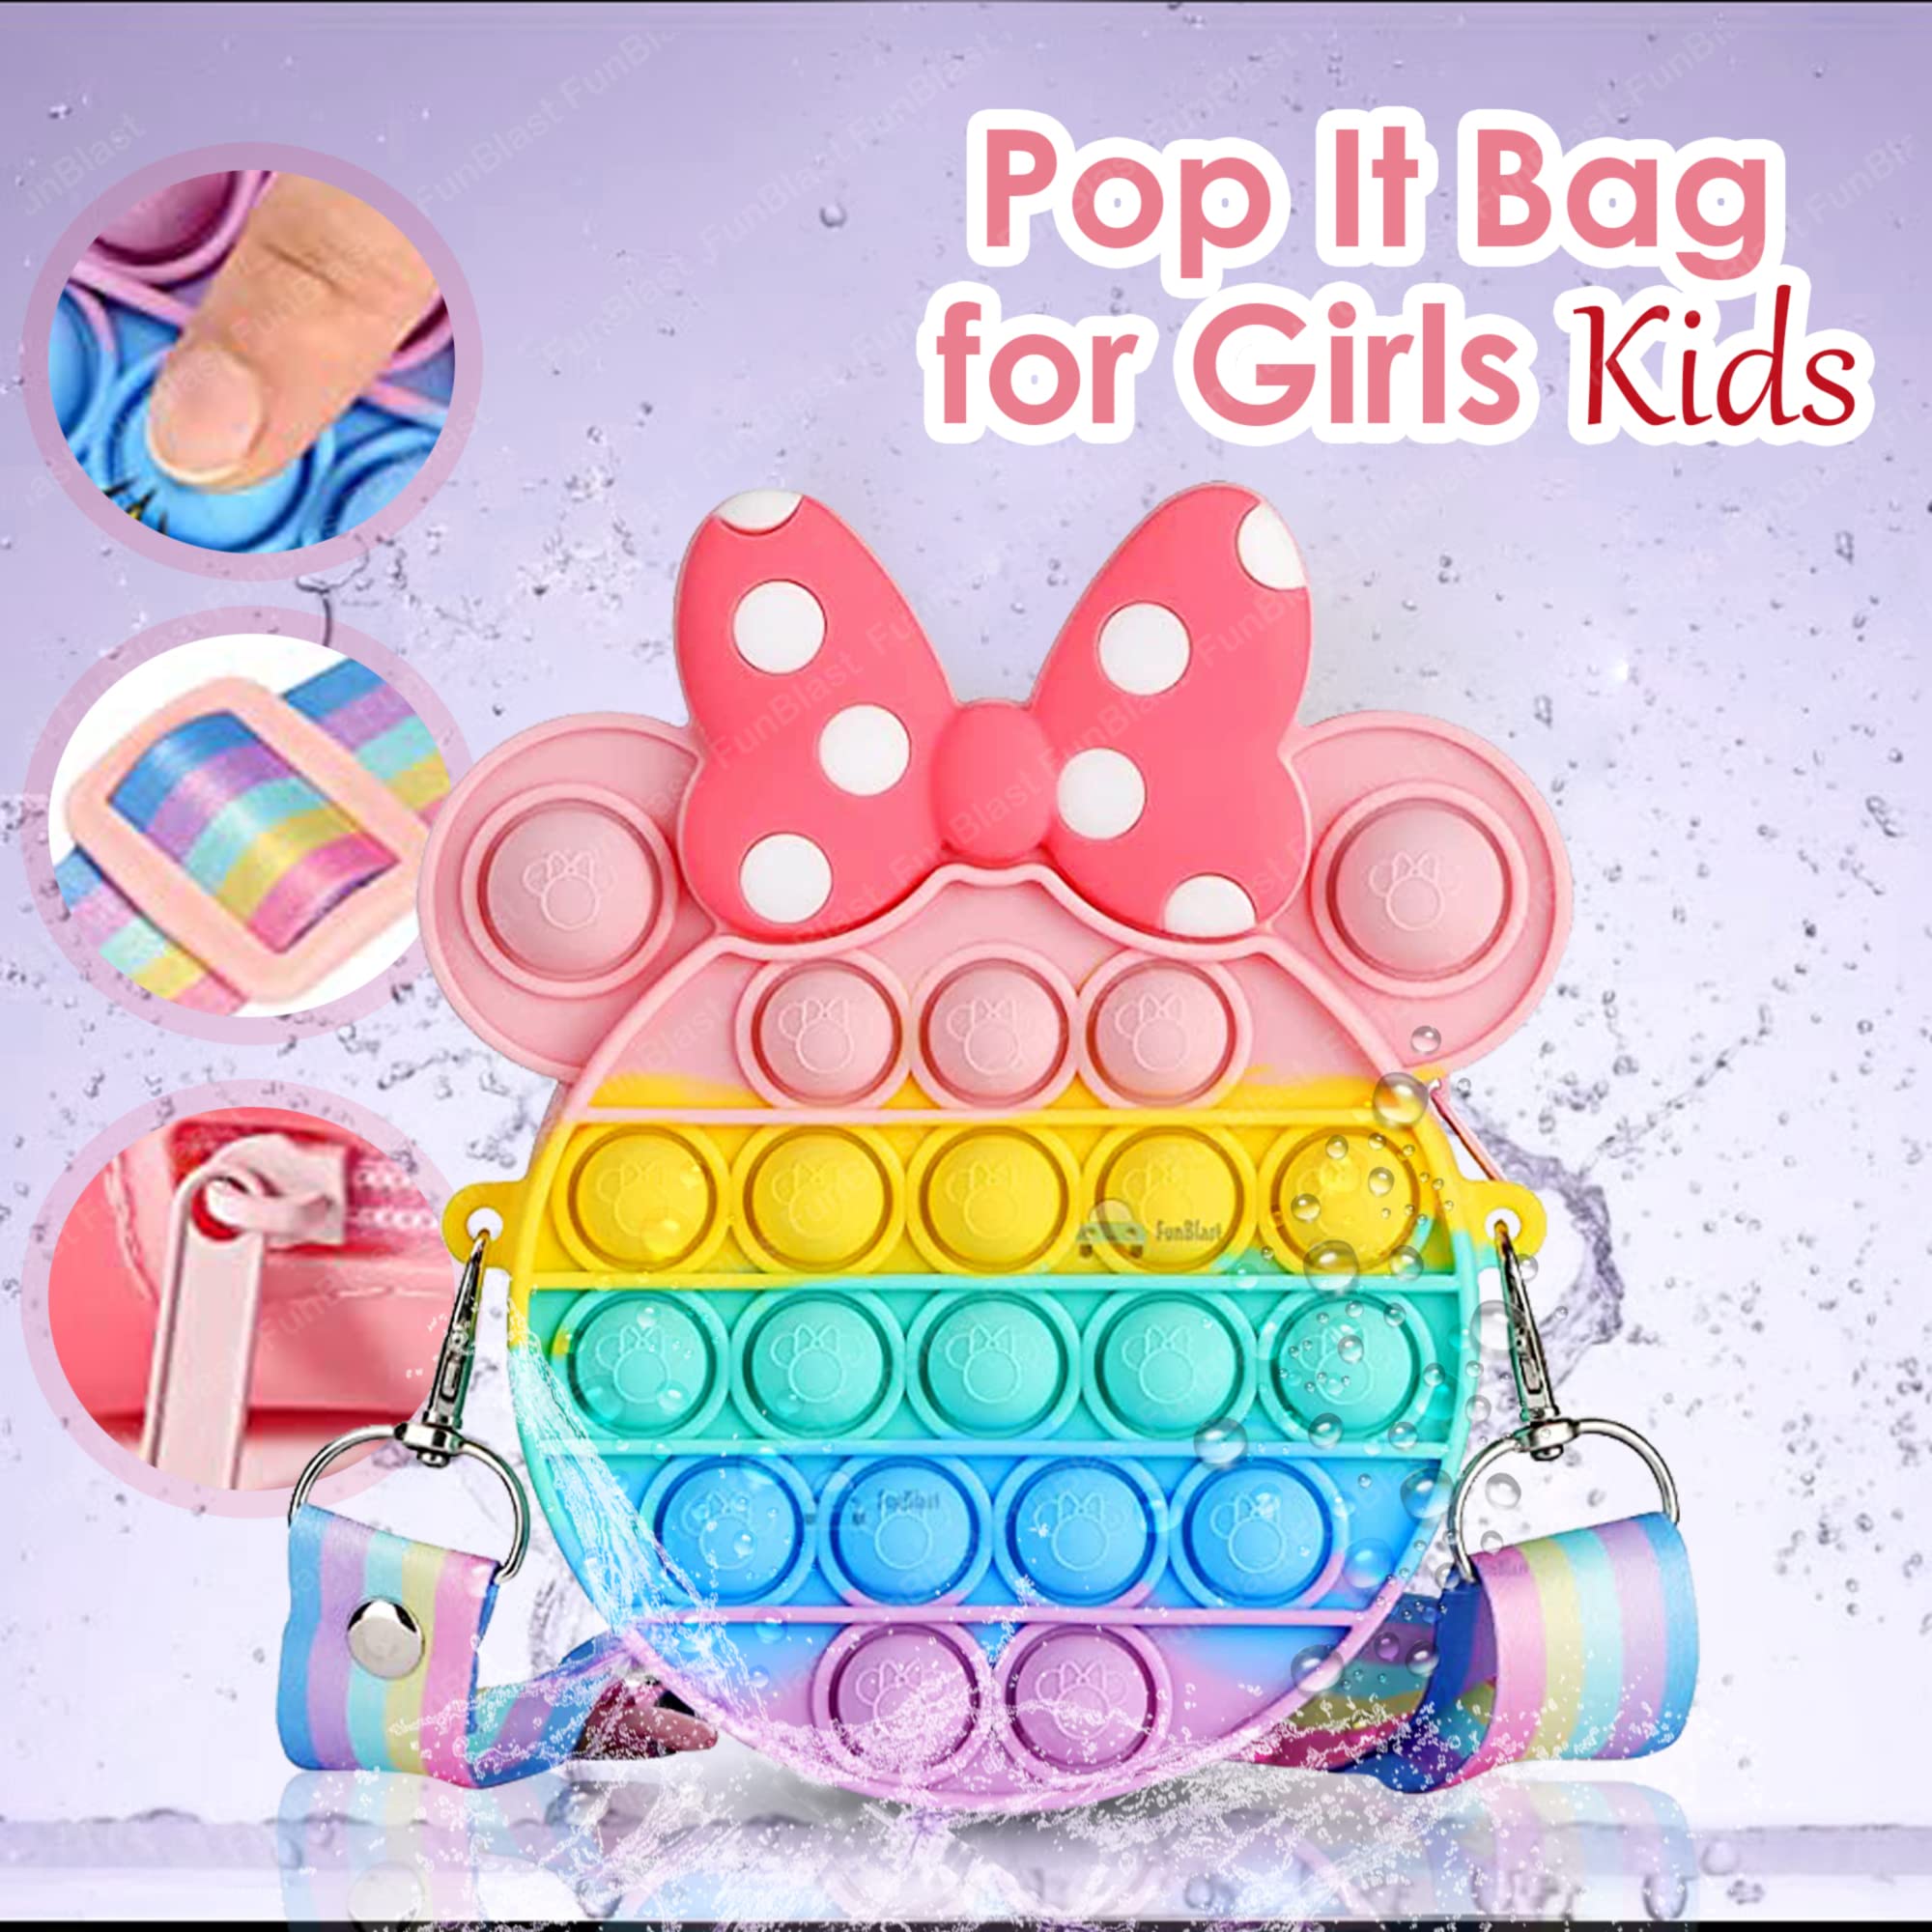 Sling Bag for Girls Crossbody Bag for Kids Sling Bag with Keychain for Girls, Sling Bag for Girls Coin Purse for Girls